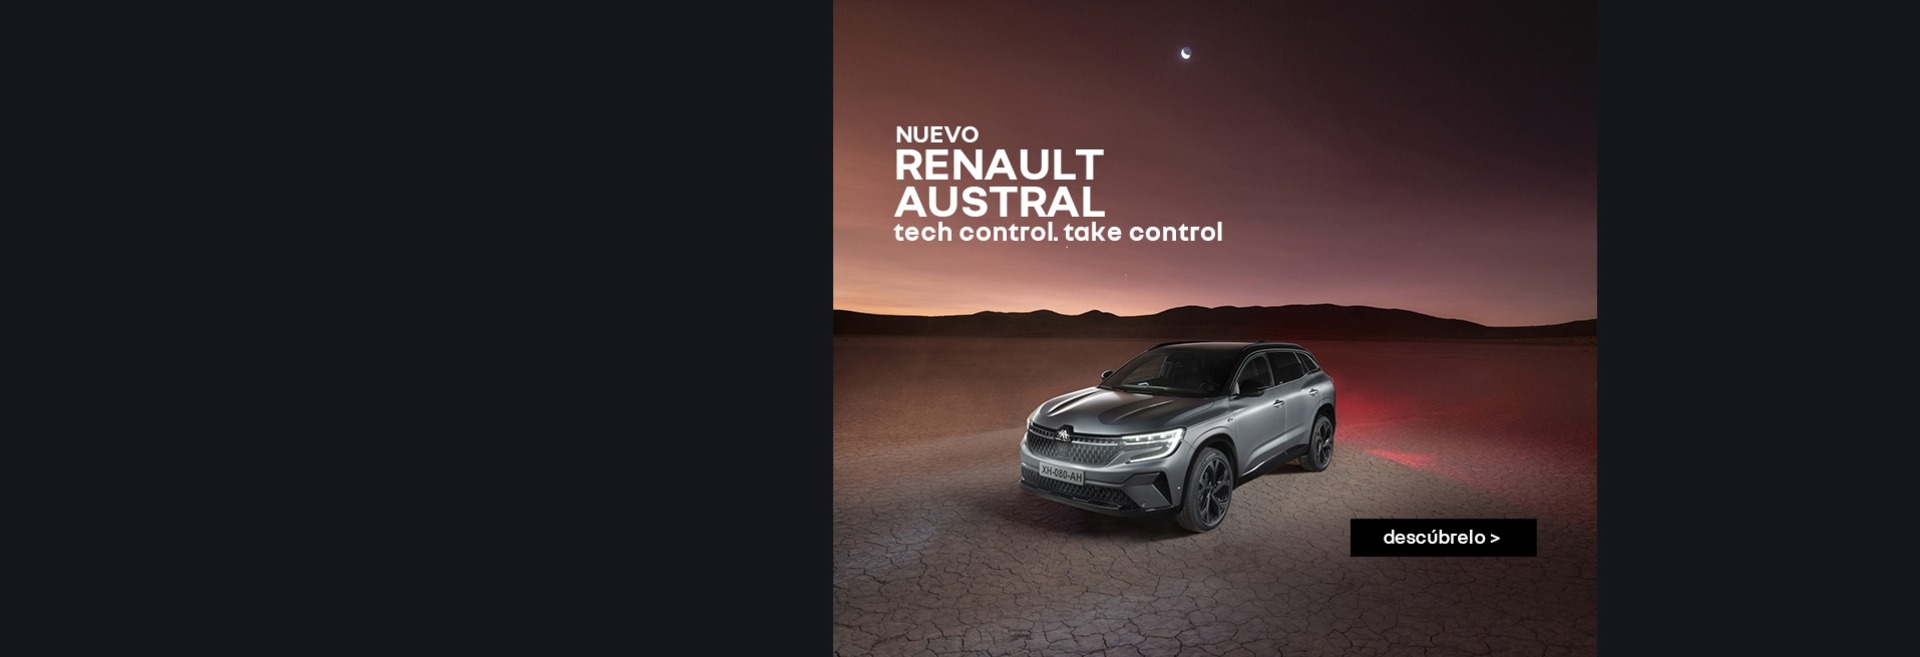 Nuevo Renault Austral